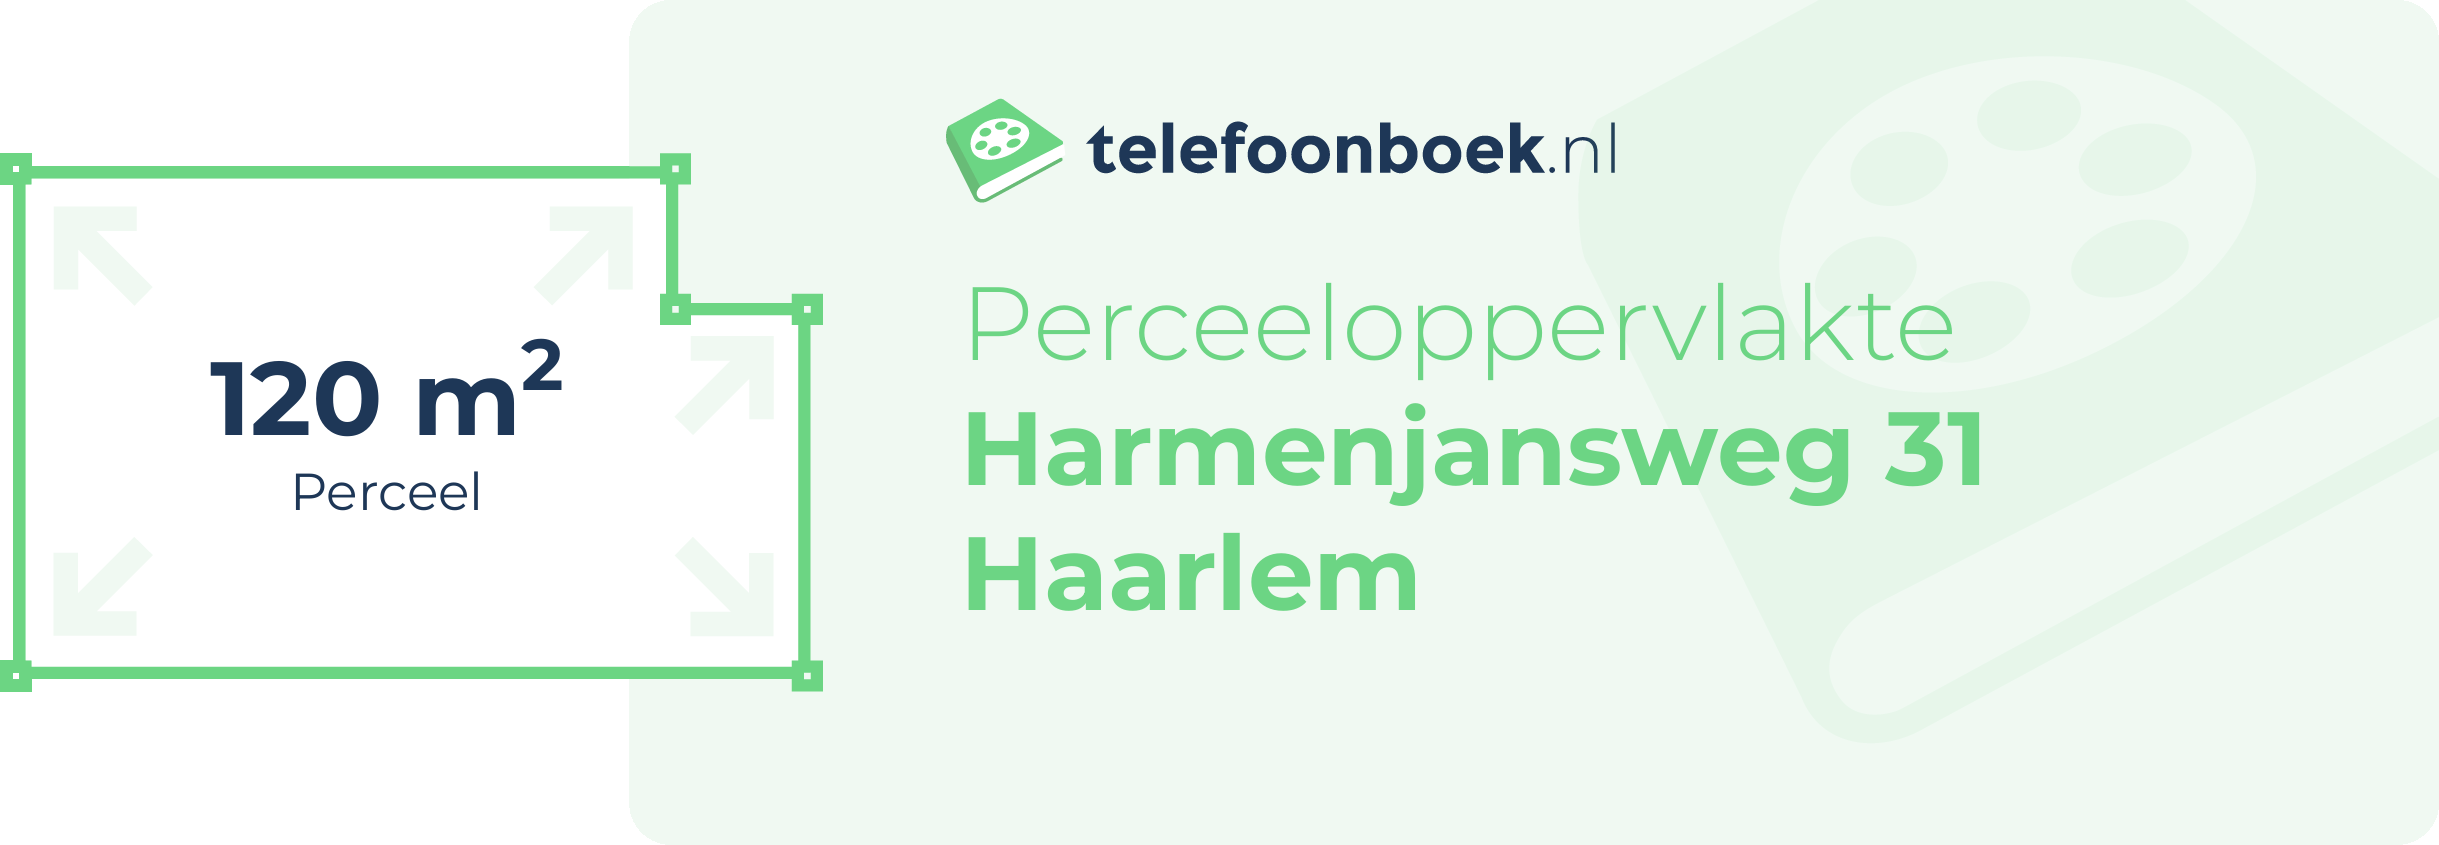 Perceeloppervlakte Harmenjansweg 31 Haarlem